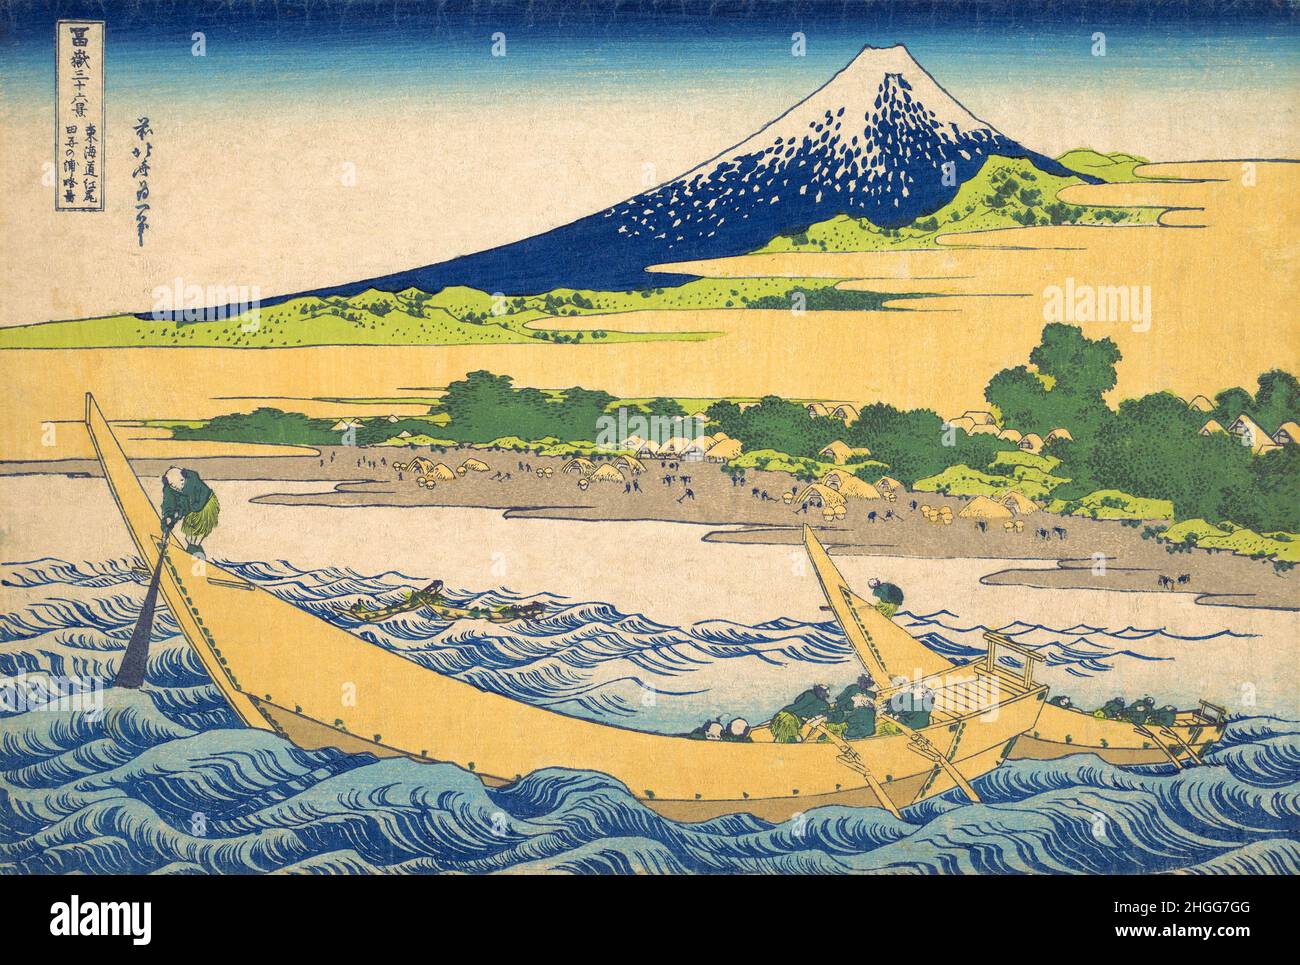 Japón: 'Bahía de Tago cerca de Ejiri en el Tokaido'. Impresión en bloque de madera ukiyo-e de la serie «Treinta y seis vistas del monte Fuji» de Katsushika Hokusai (31 de octubre de 1760 - 10 de mayo de 1849), 1830. «Treinta y seis vistas del monte Fuji» es una serie «ukiyo-e» de grabados en madera del artista japonés Katsushika Hokusai. La serie muestra el Monte Fuji en diferentes estaciones y condiciones climáticas desde diversos lugares y distancias. En realidad consiste en 46 impresiones creadas entre 1826 y 1833. Los primeros 36 fueron incluidos en la publicación original y, debido a su popularidad, se agregaron 10 más. Foto de stock